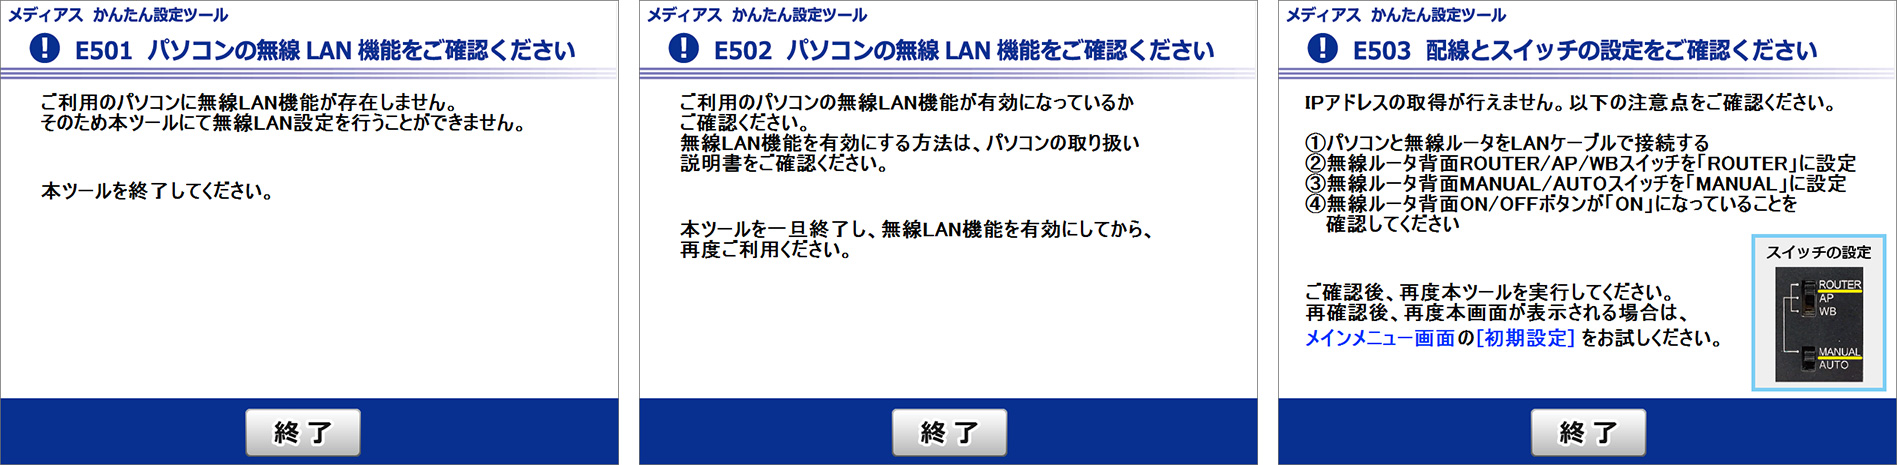 無線LAN設定の手順 STEP.3-2